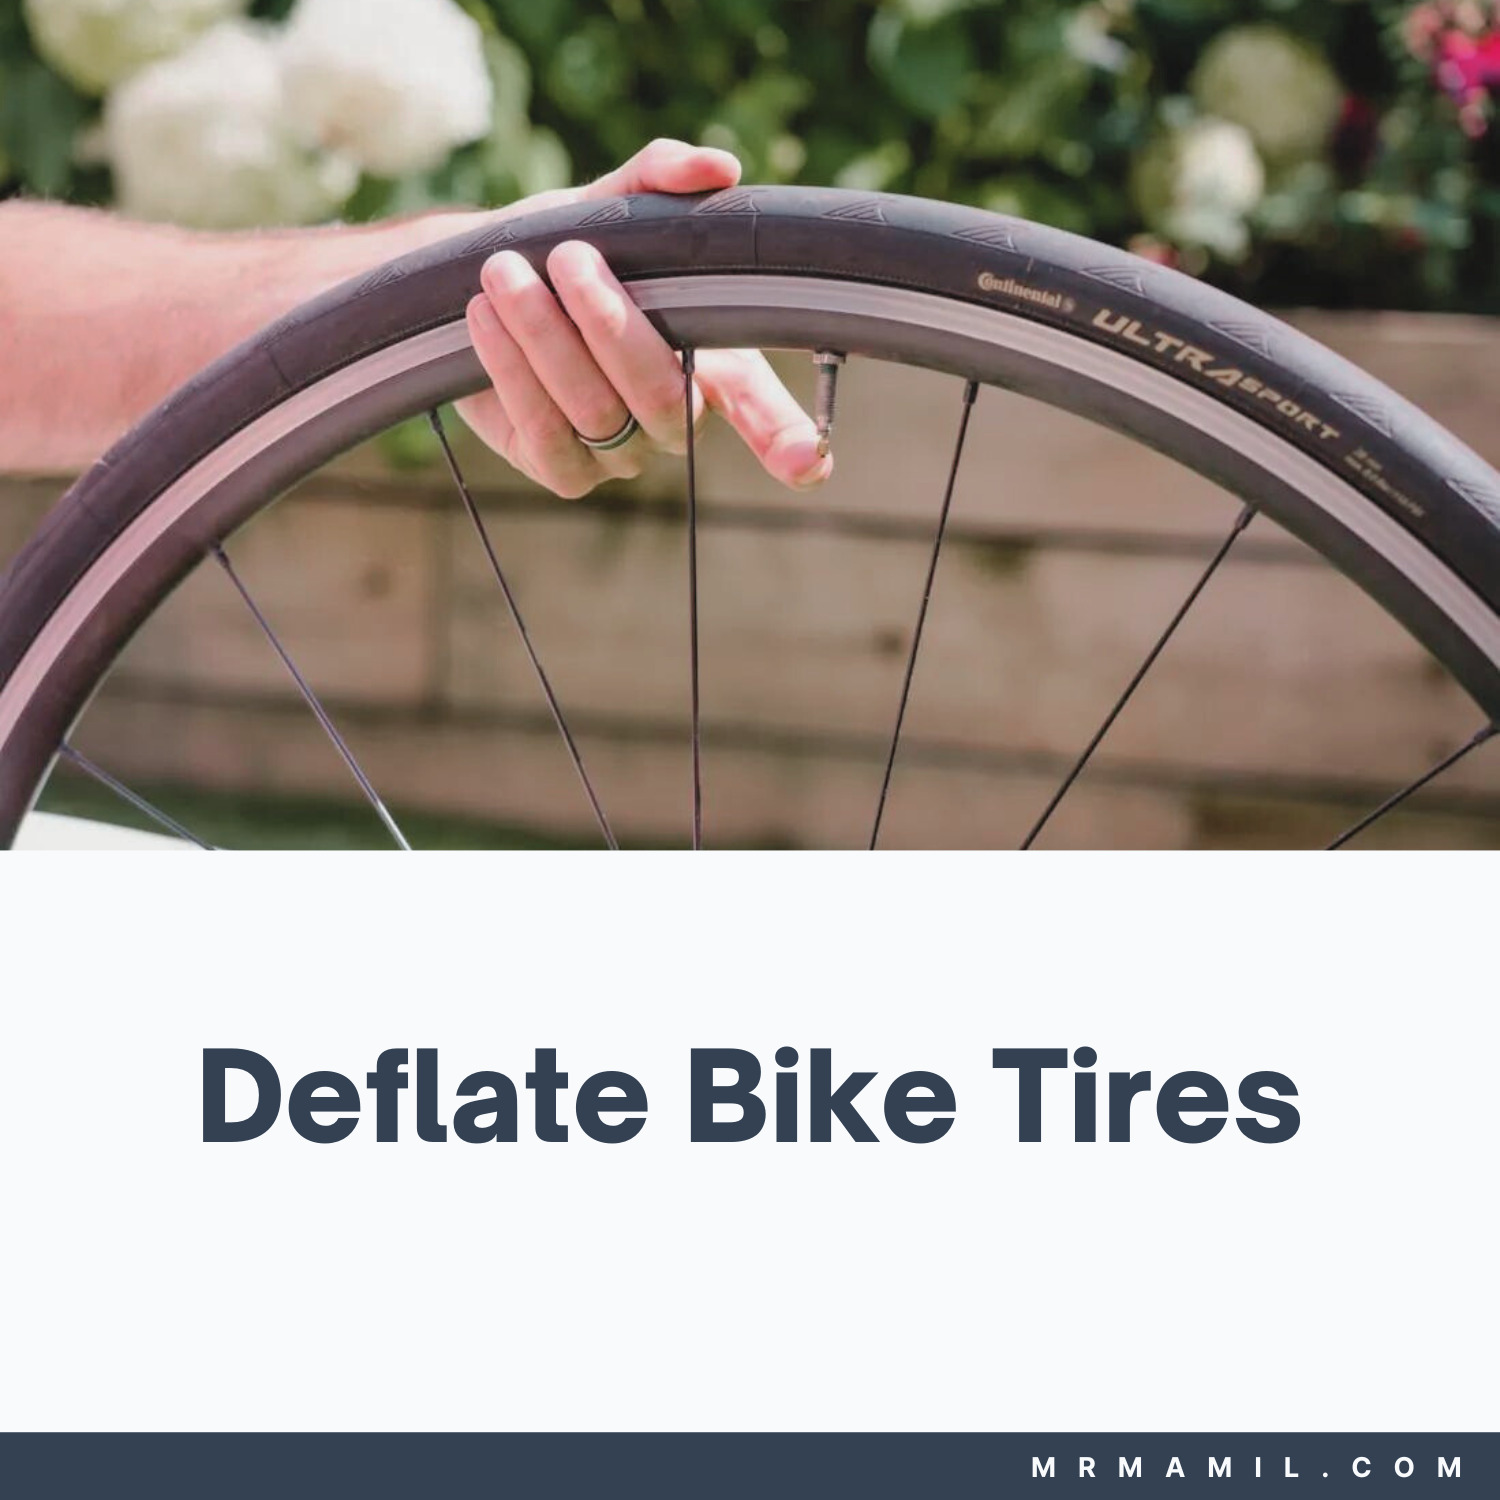 How to Deflate Bike Tires